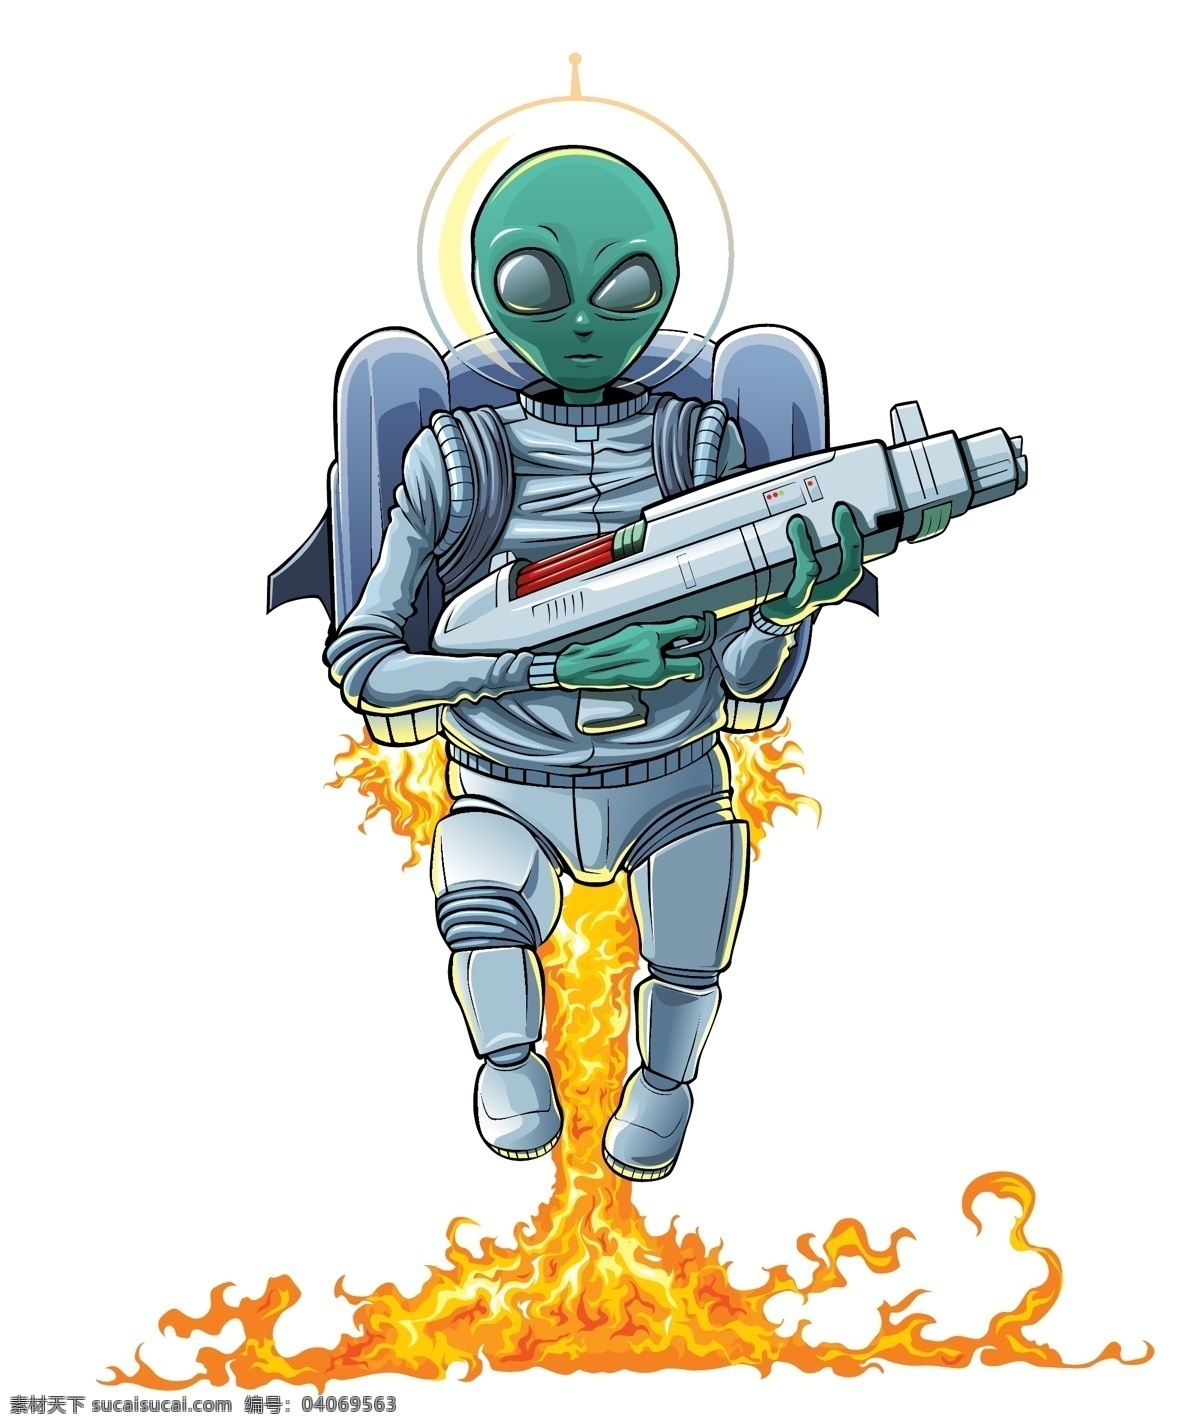 起飞 外星人 战士 火焰 卡通人物漫画 人物插画 人物插图 卡通战士 卡通形象 矢量人物 矢量素材